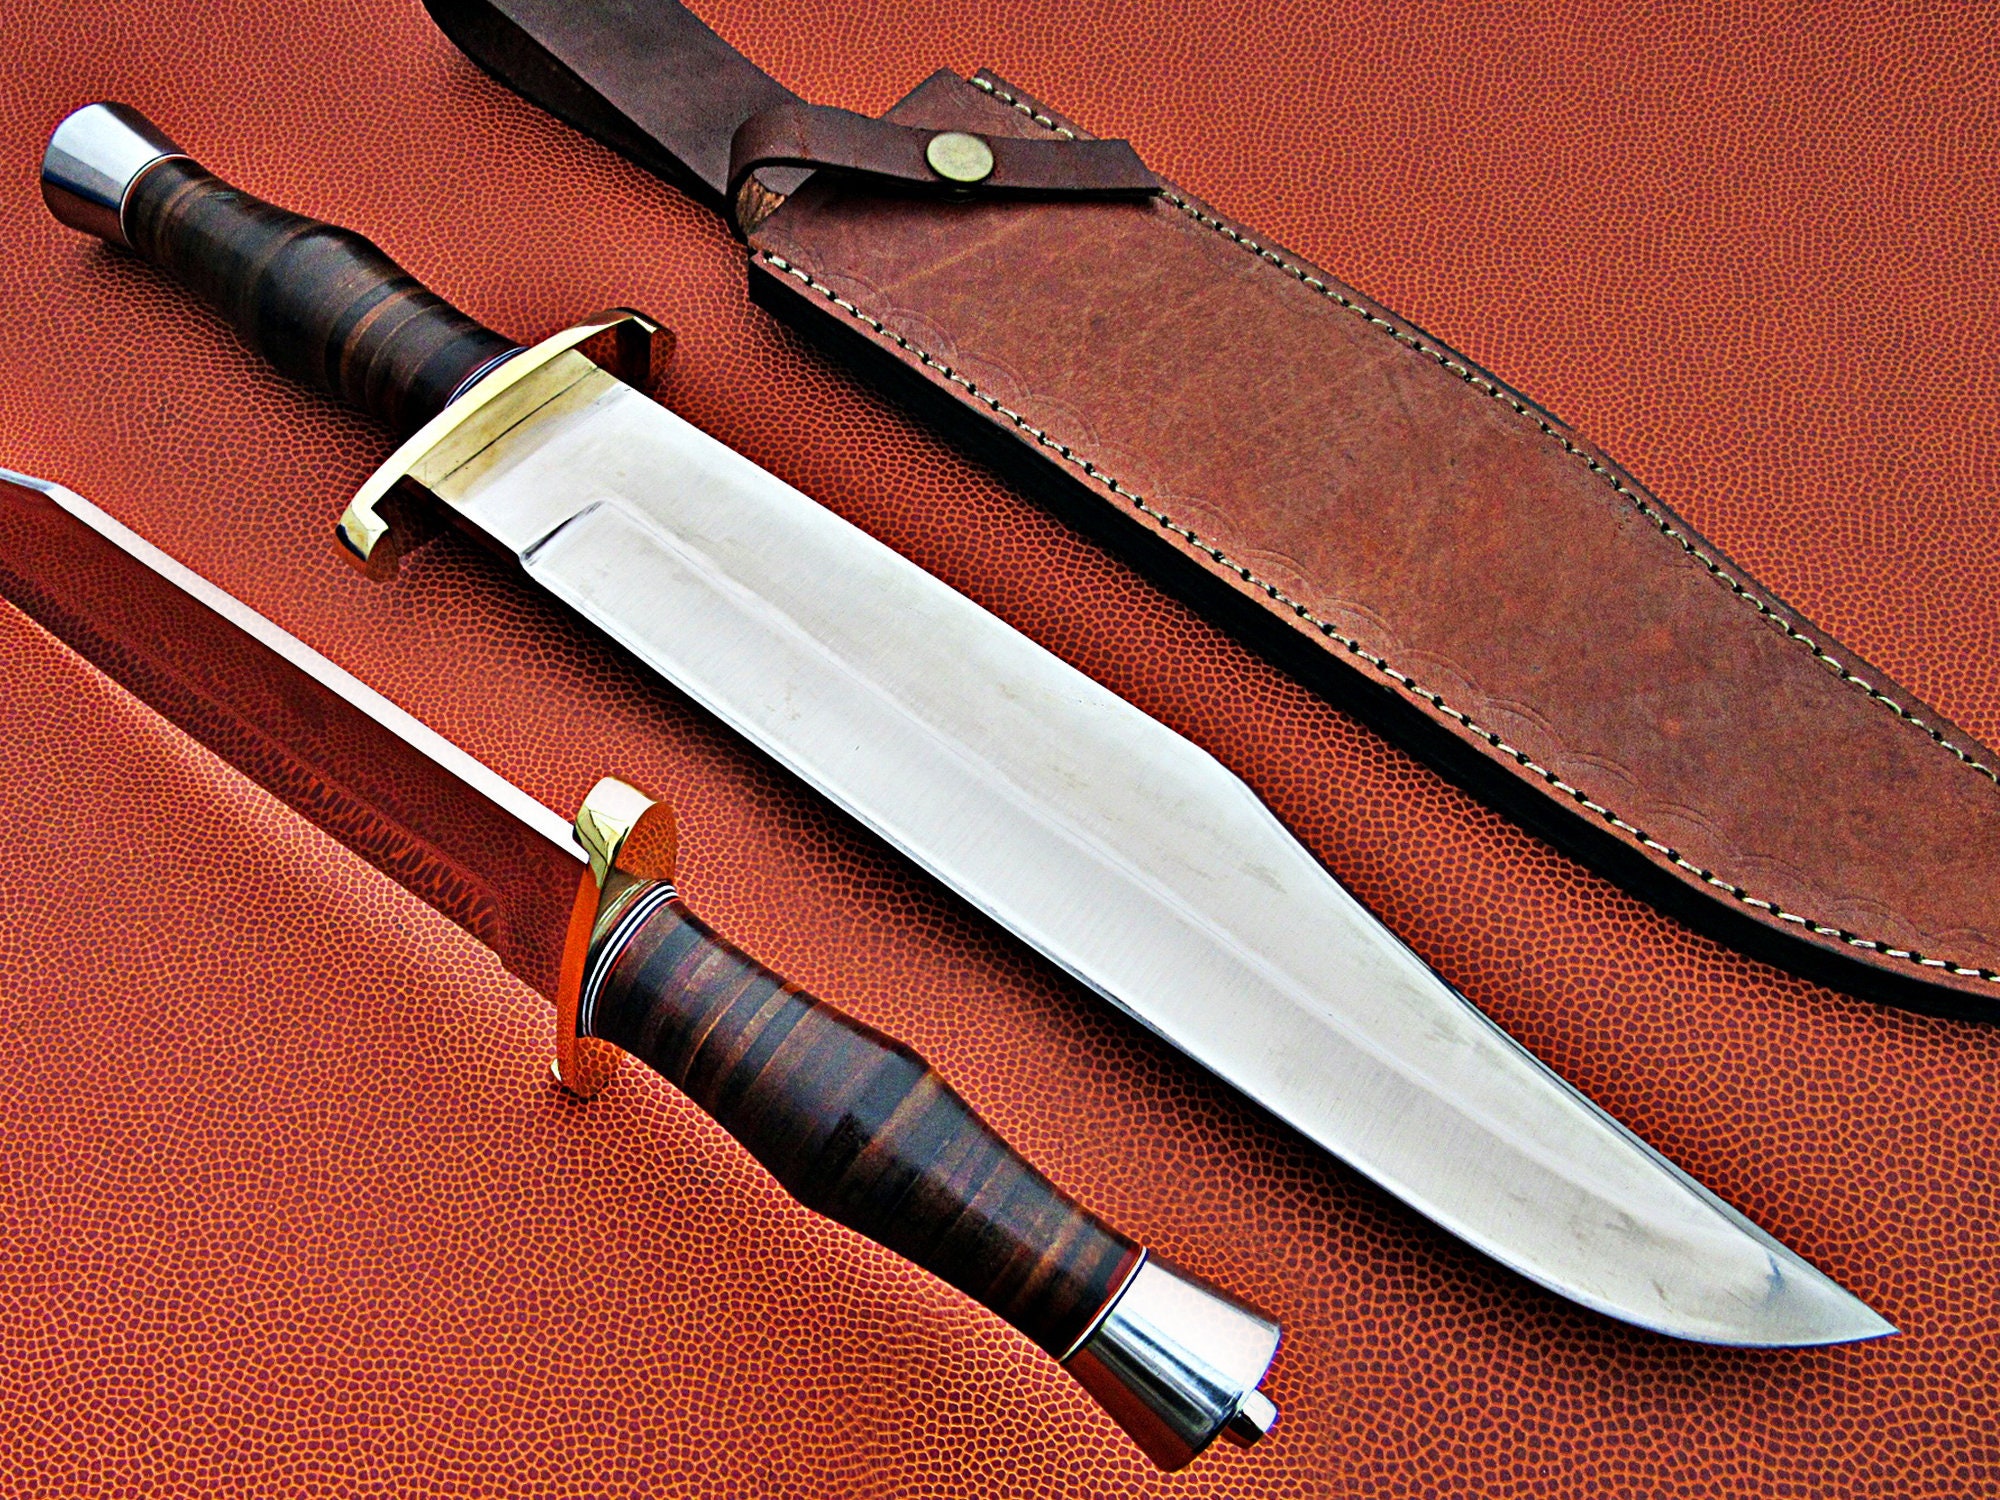  CooB Knife Finger Guard Bolster & Pommel for Custom Knife Knives  Making Handle, Hand-Casted Metal Knife Supplier Accessories (Set Fink NKVD  Bronze) : Home & Kitchen